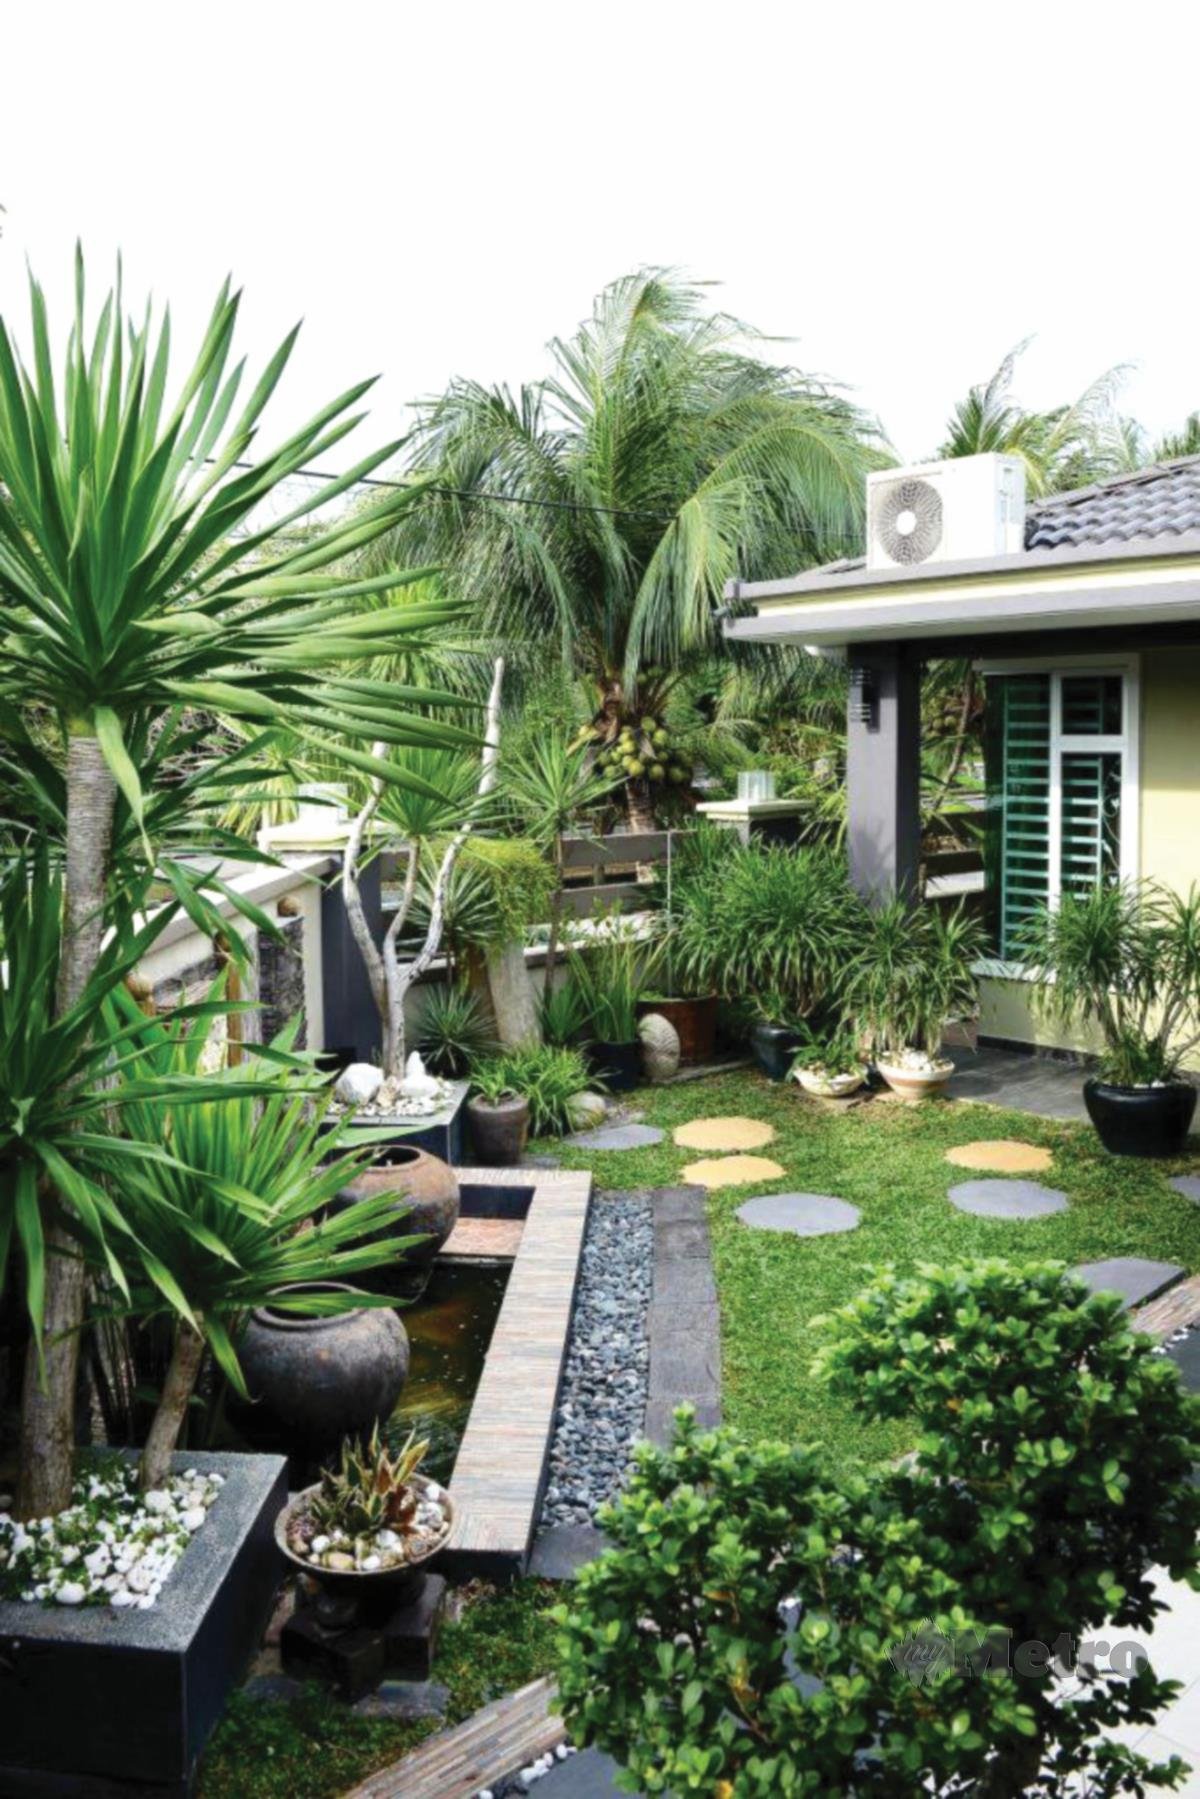 SUASANA hijau sekitar rumah sesuai jadi landskap, bersifat penyelesaian berasaskan alam semula jadi.